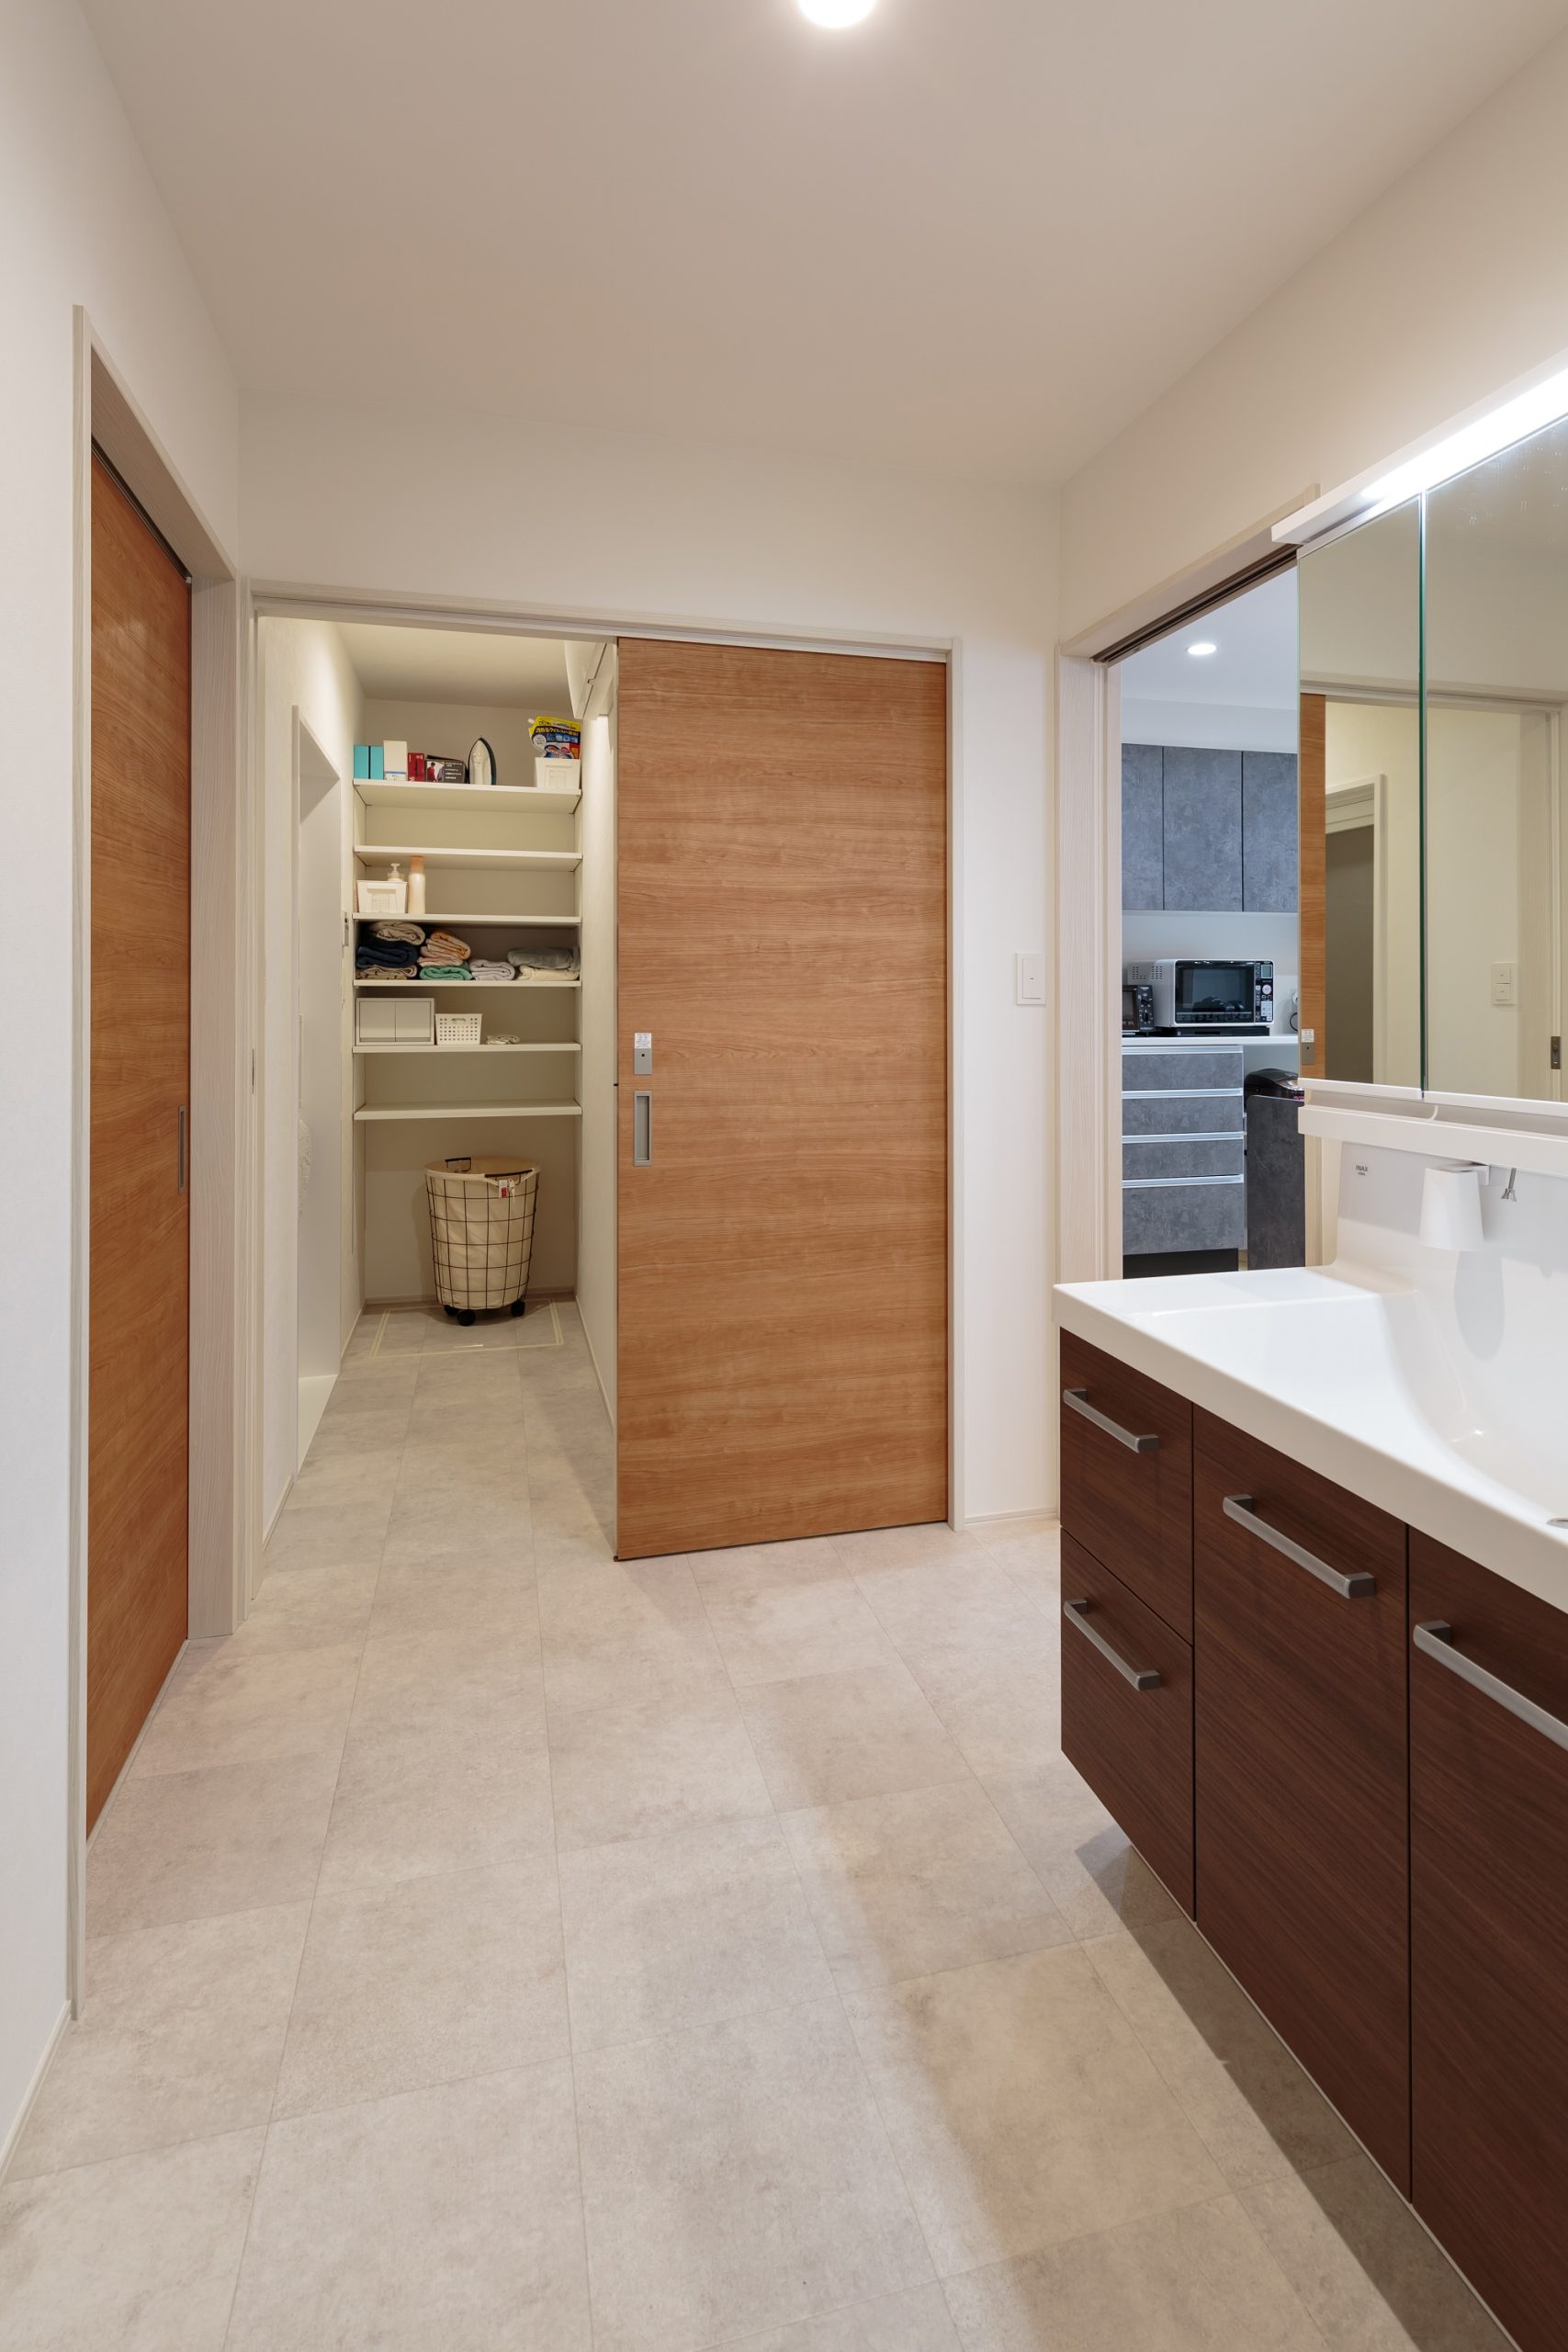 脱衣室は扉で仕切れる独立した空間。入浴中も気兼ねが不要で、家族間のプライバシーを大切にできる設計です